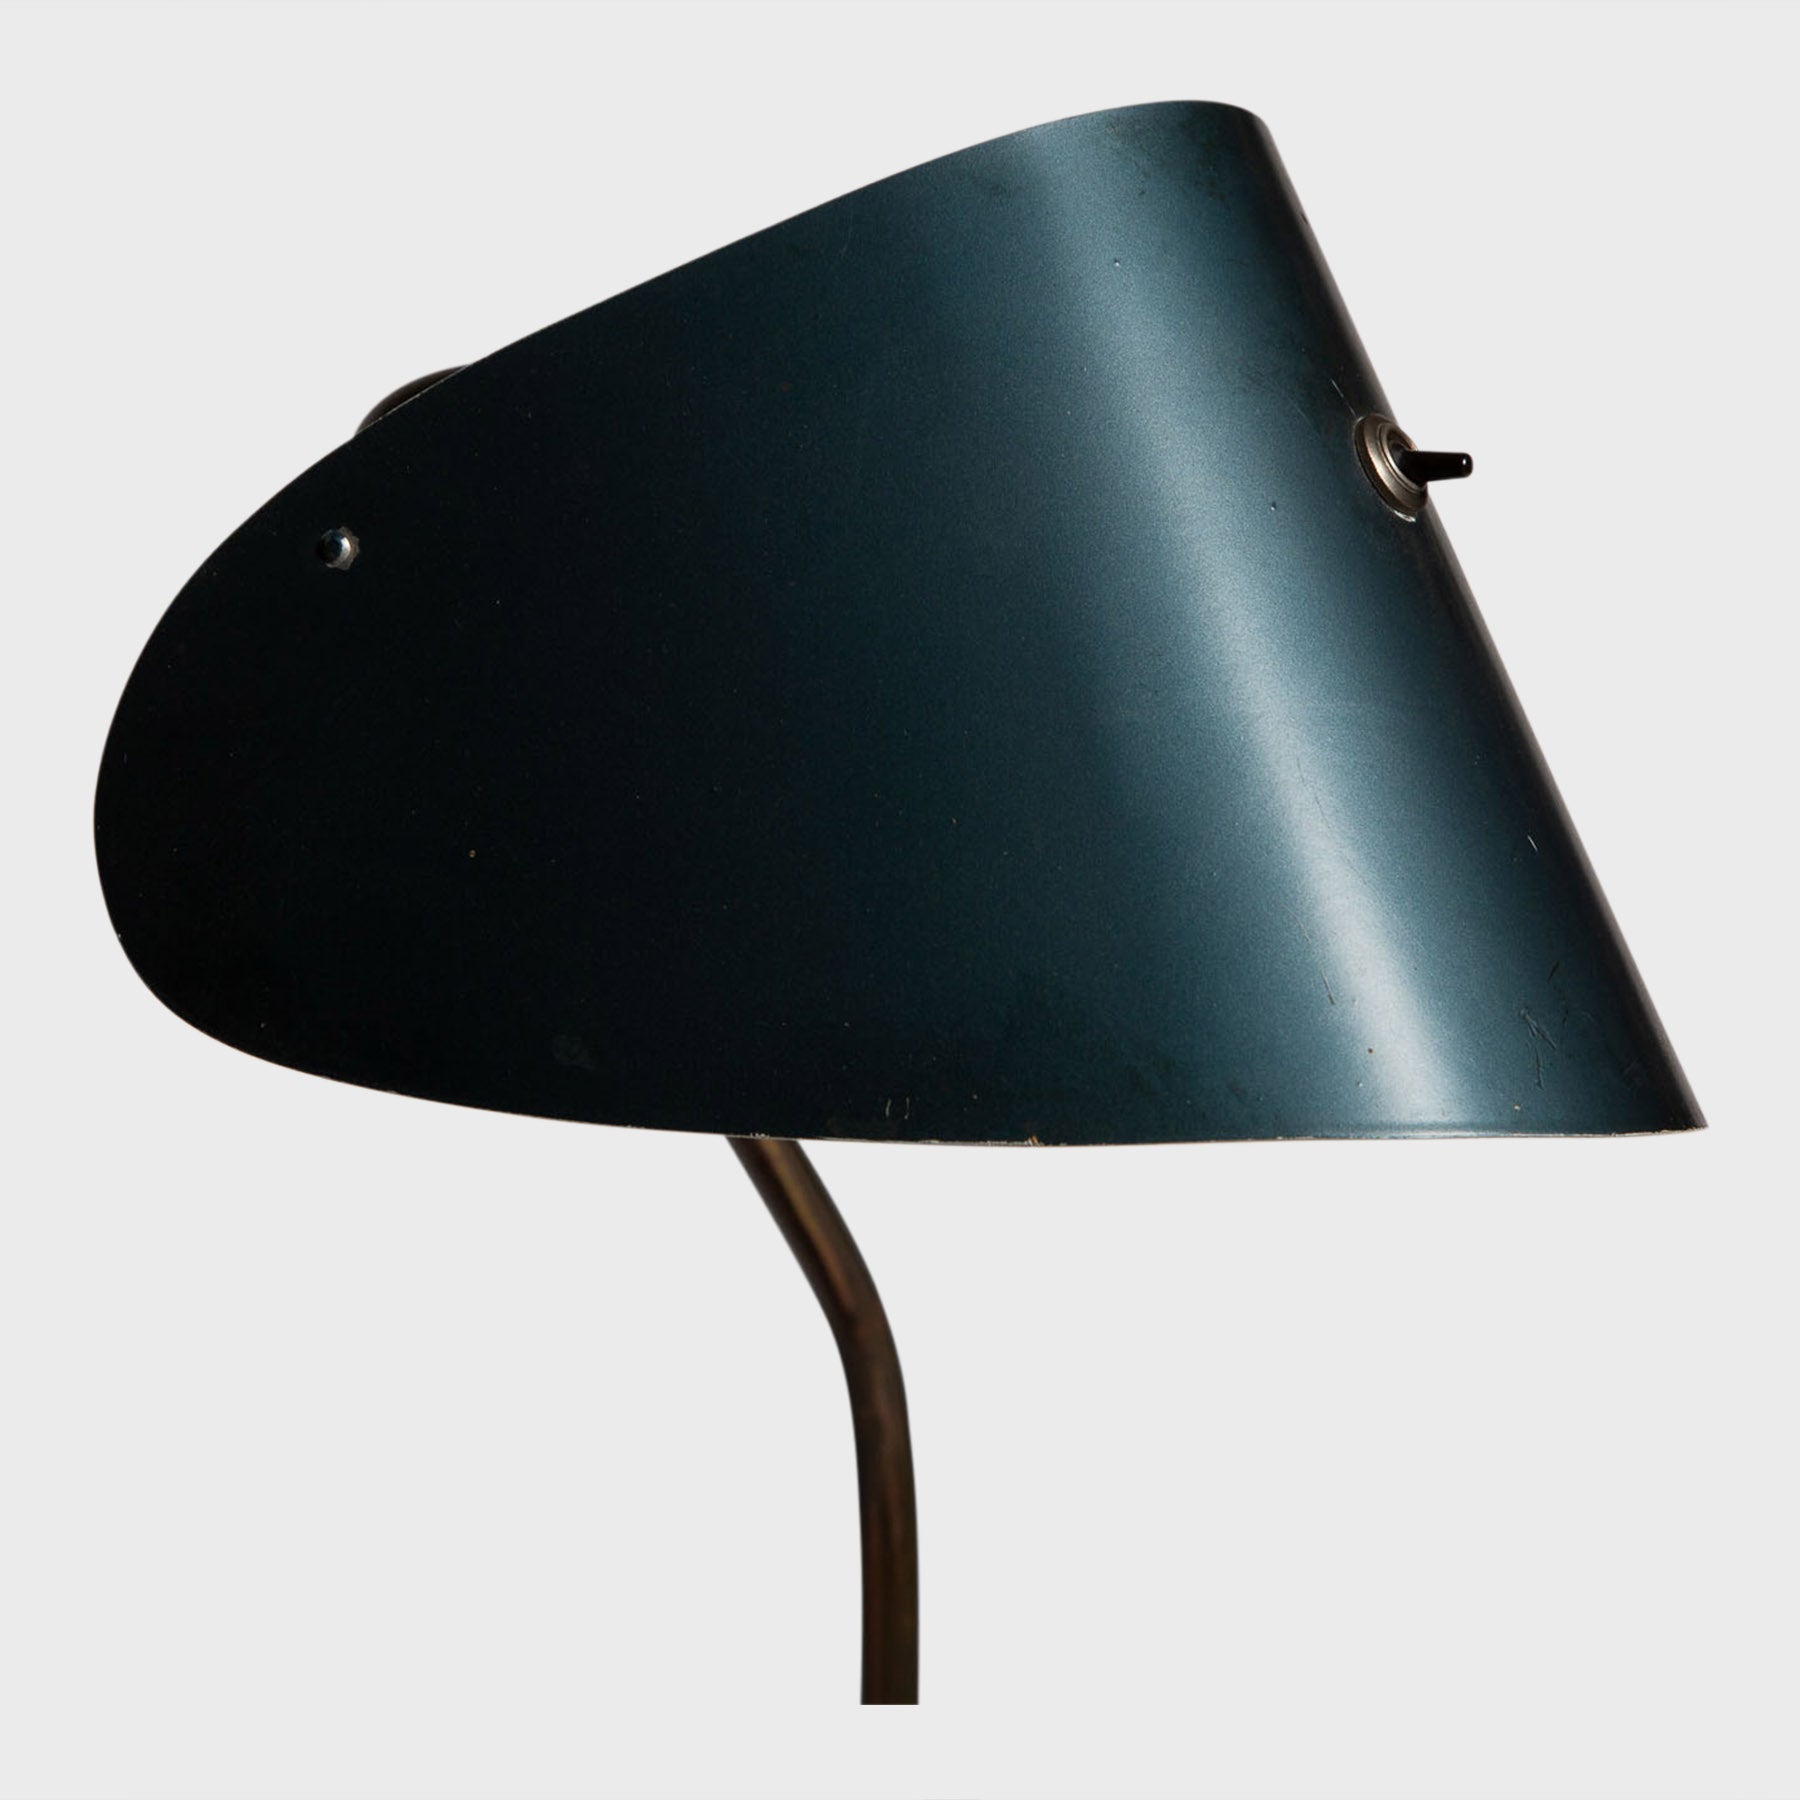 black curved metal desk lamp close up